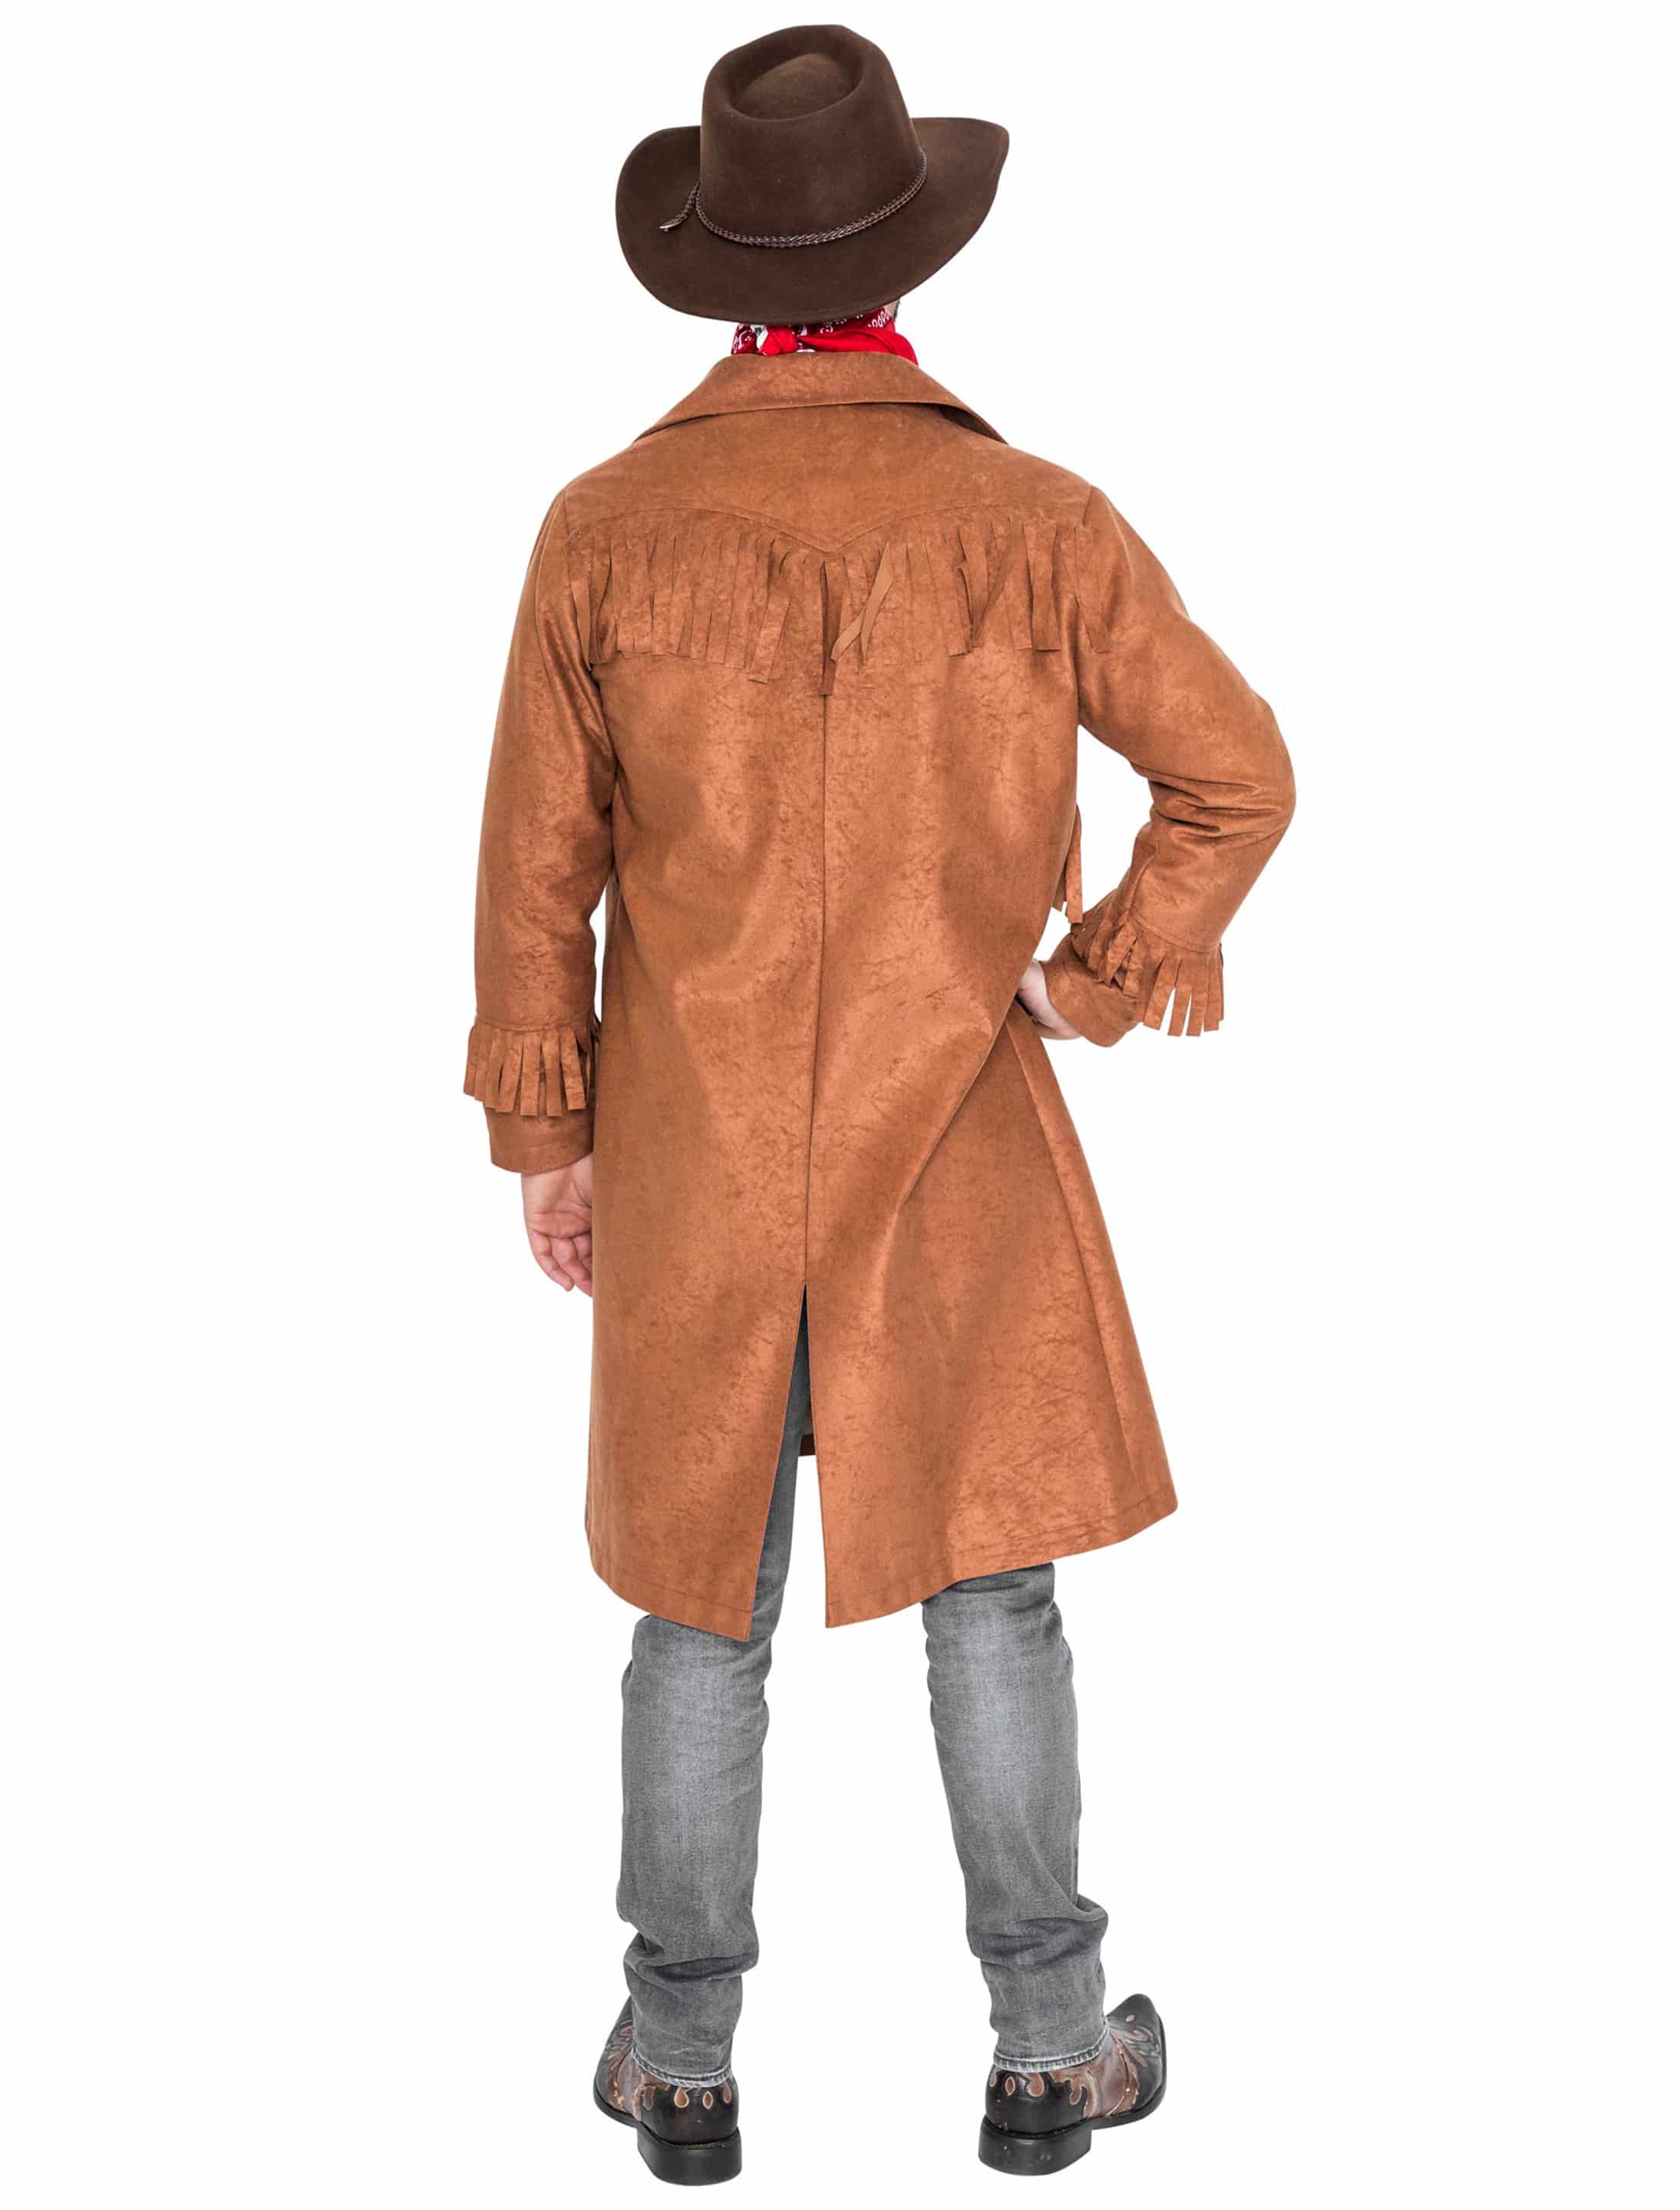 Mantel Cowboy mit Fransen braun L/XL